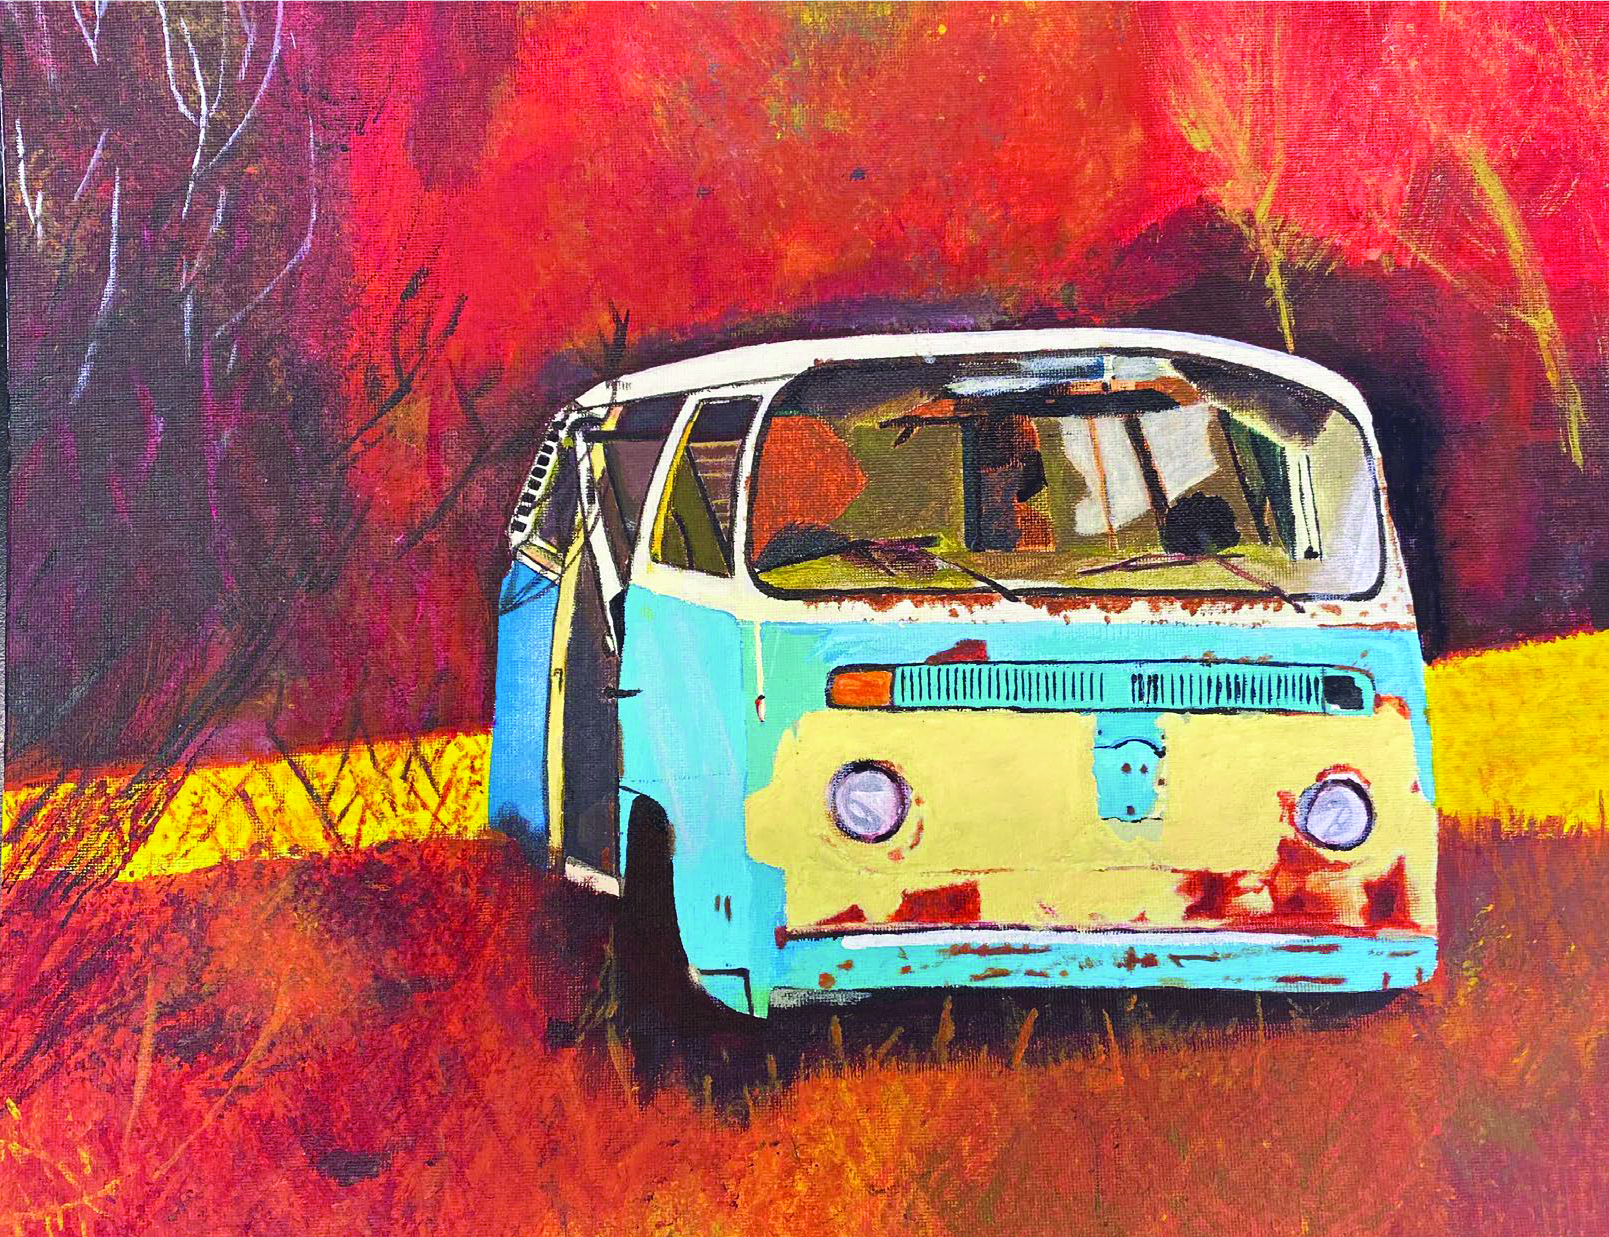 Painting of VW van.